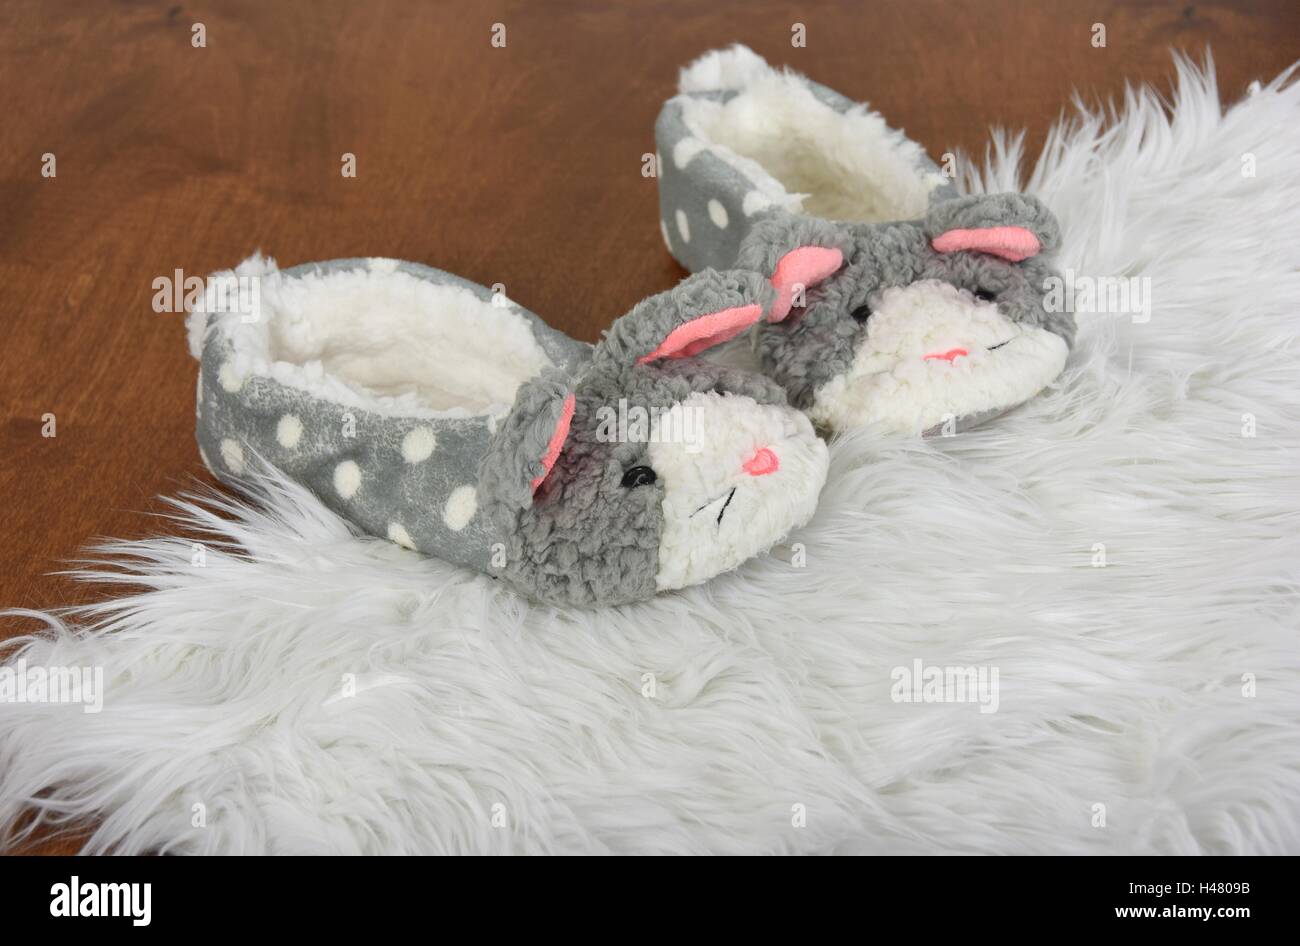 Paire de chaussons lapin fourrure blanche sur un tapis et plancher de bois Banque D'Images